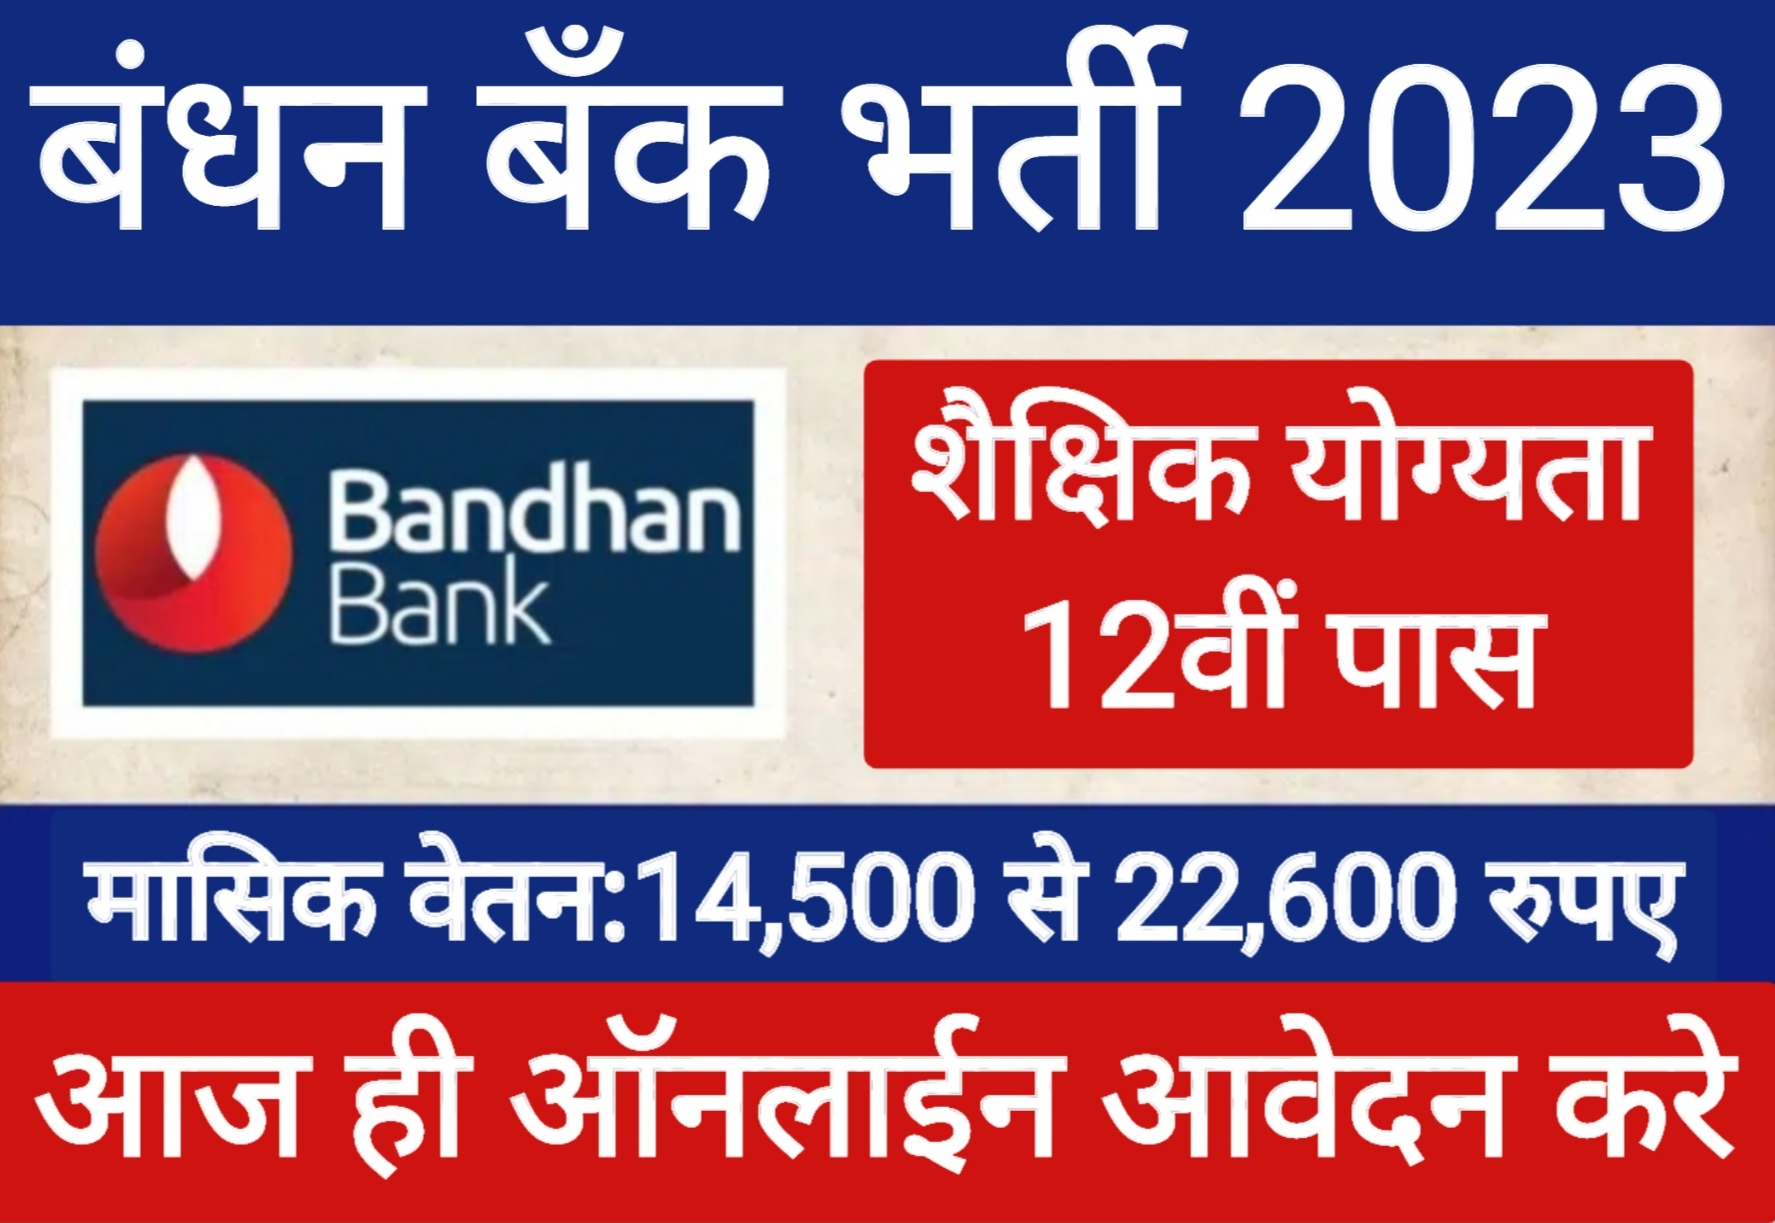 Bandhan-Bank-Data-Entry-Vacancy-2023, बंधन-बैंक-डाटा-एंट्री-ऑपरेटर-भर्ती-2023-के-लिए-27-दिसंबर-तक-करें-आवेदन